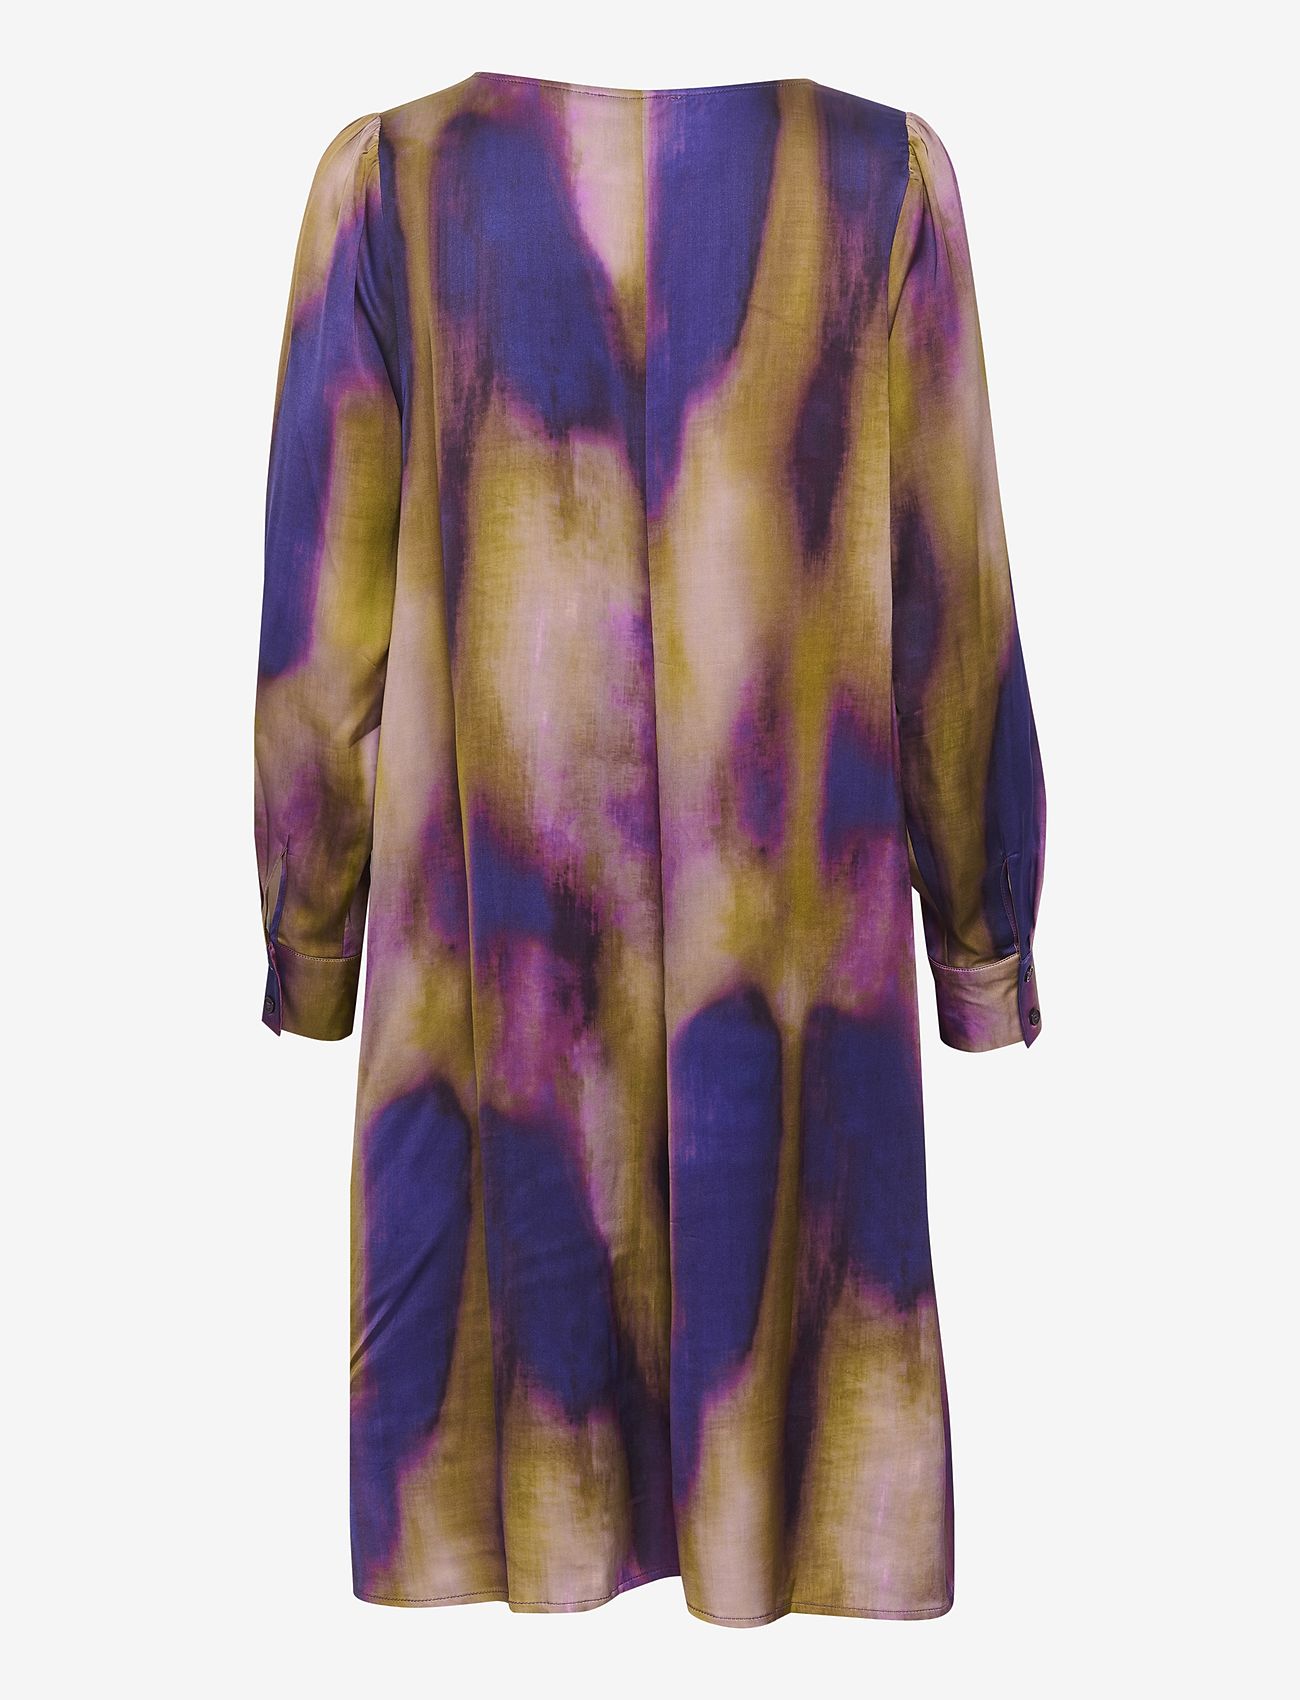 My Essential Wardrobe - TamaraMW Dress - vakarėlių drabužiai išparduotuvių kainomis - parachute purple aop - 1